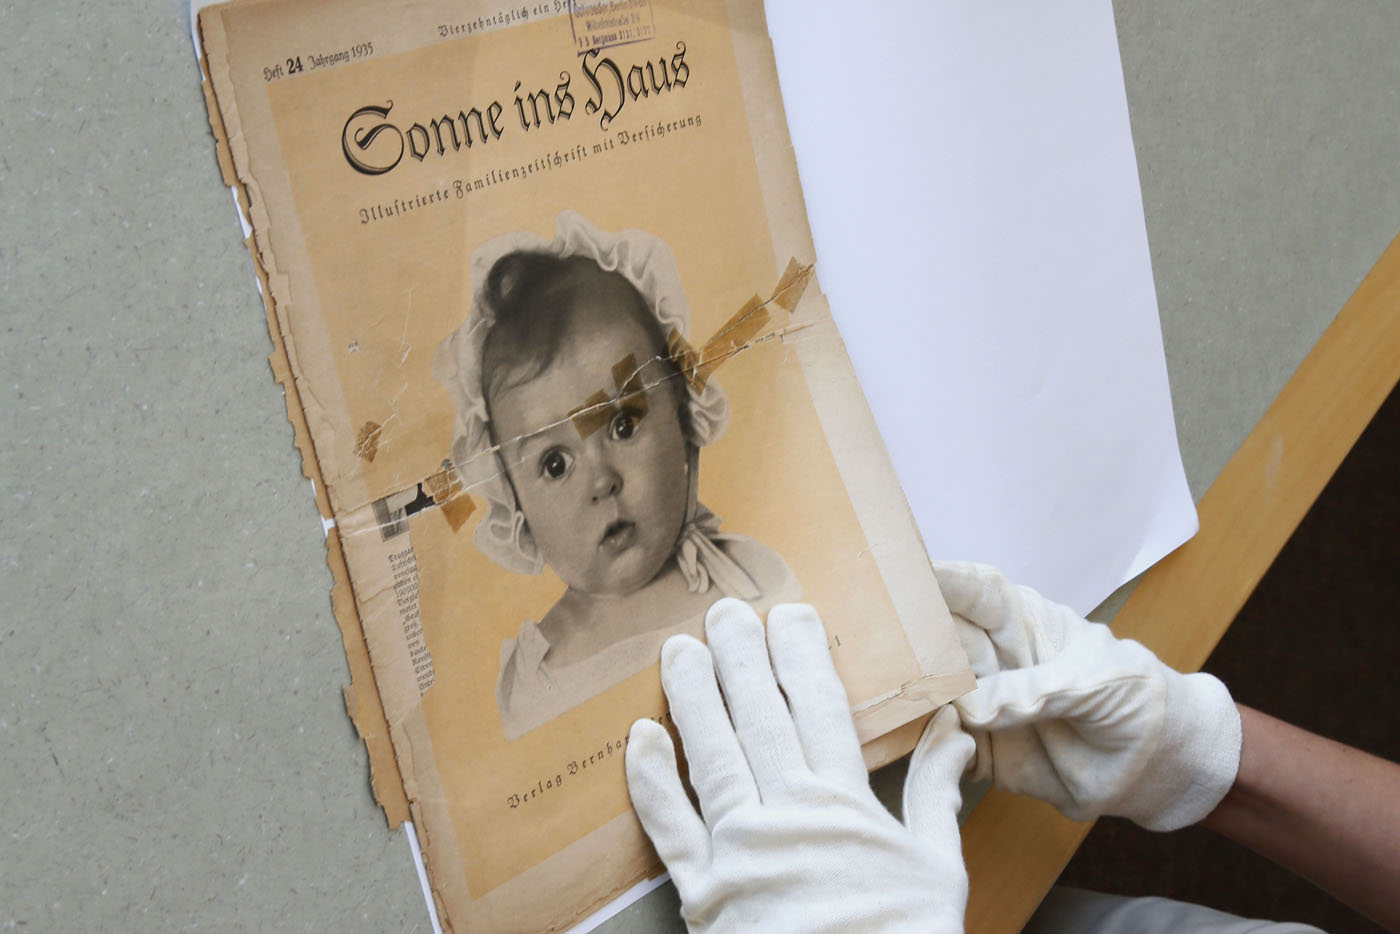 La niña judía que apareció en la portada de una revista nazi (Fotos)